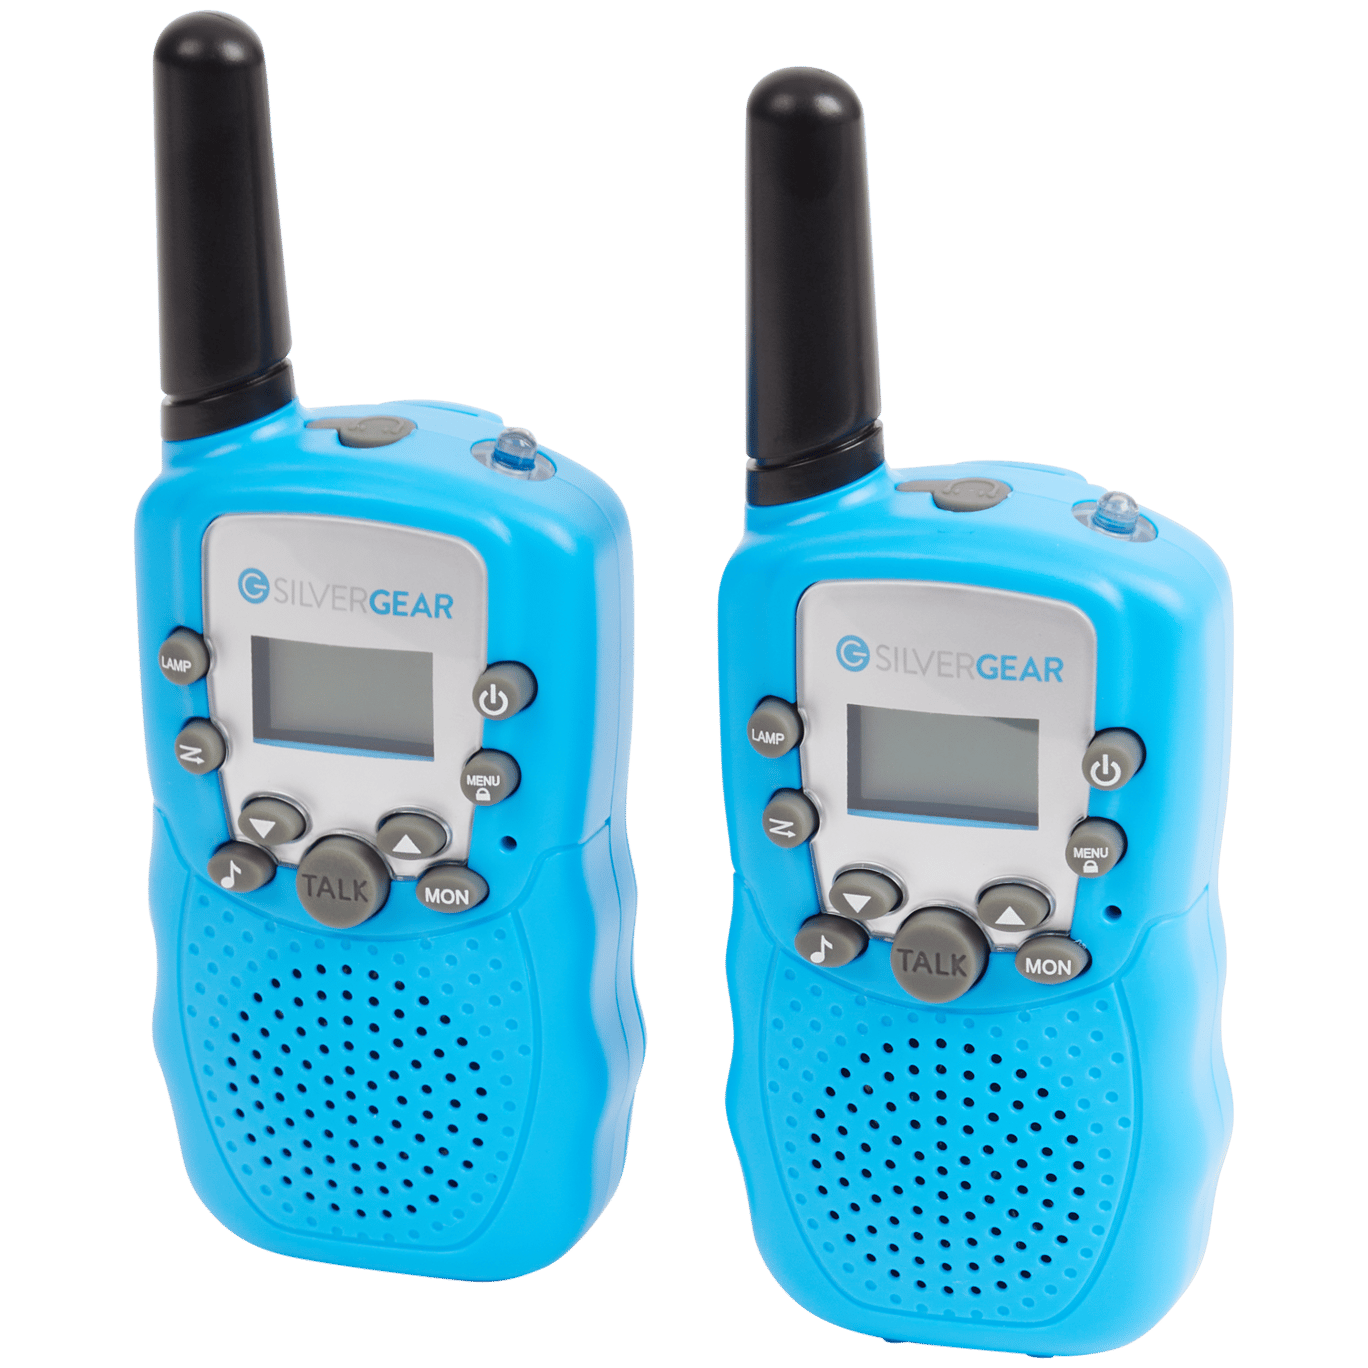 Silvergear walkie-talkie-set